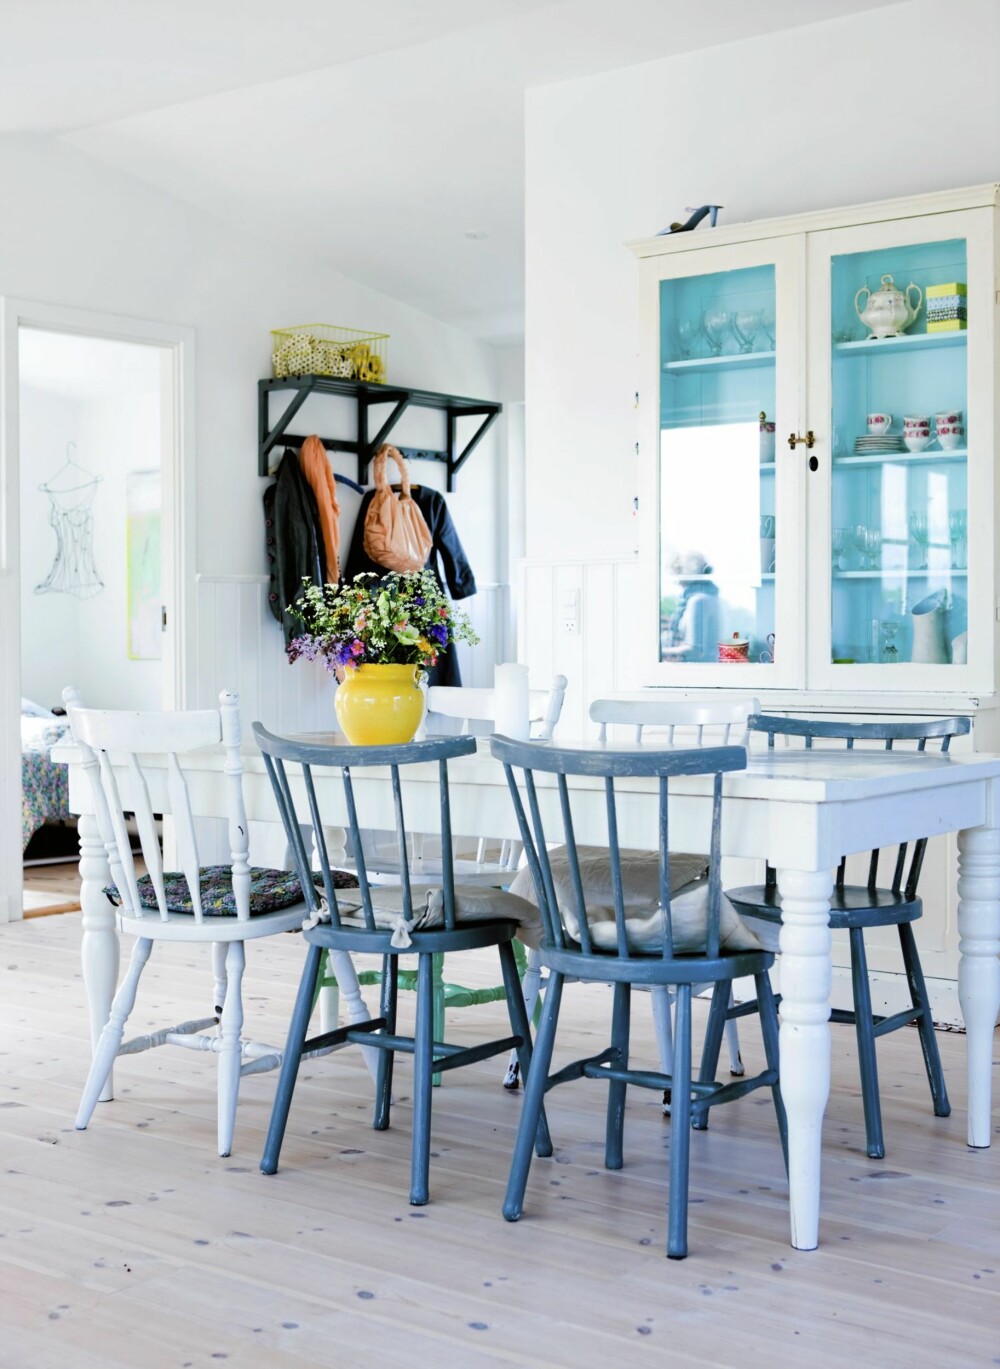 VÅRFORNEMMELSER: Spisemøblementet er dels bruktkjøp, dels hjemmelagd. De blåmalte pinnestolenes form trer tydelig fram i det hvite, luftige rommet.